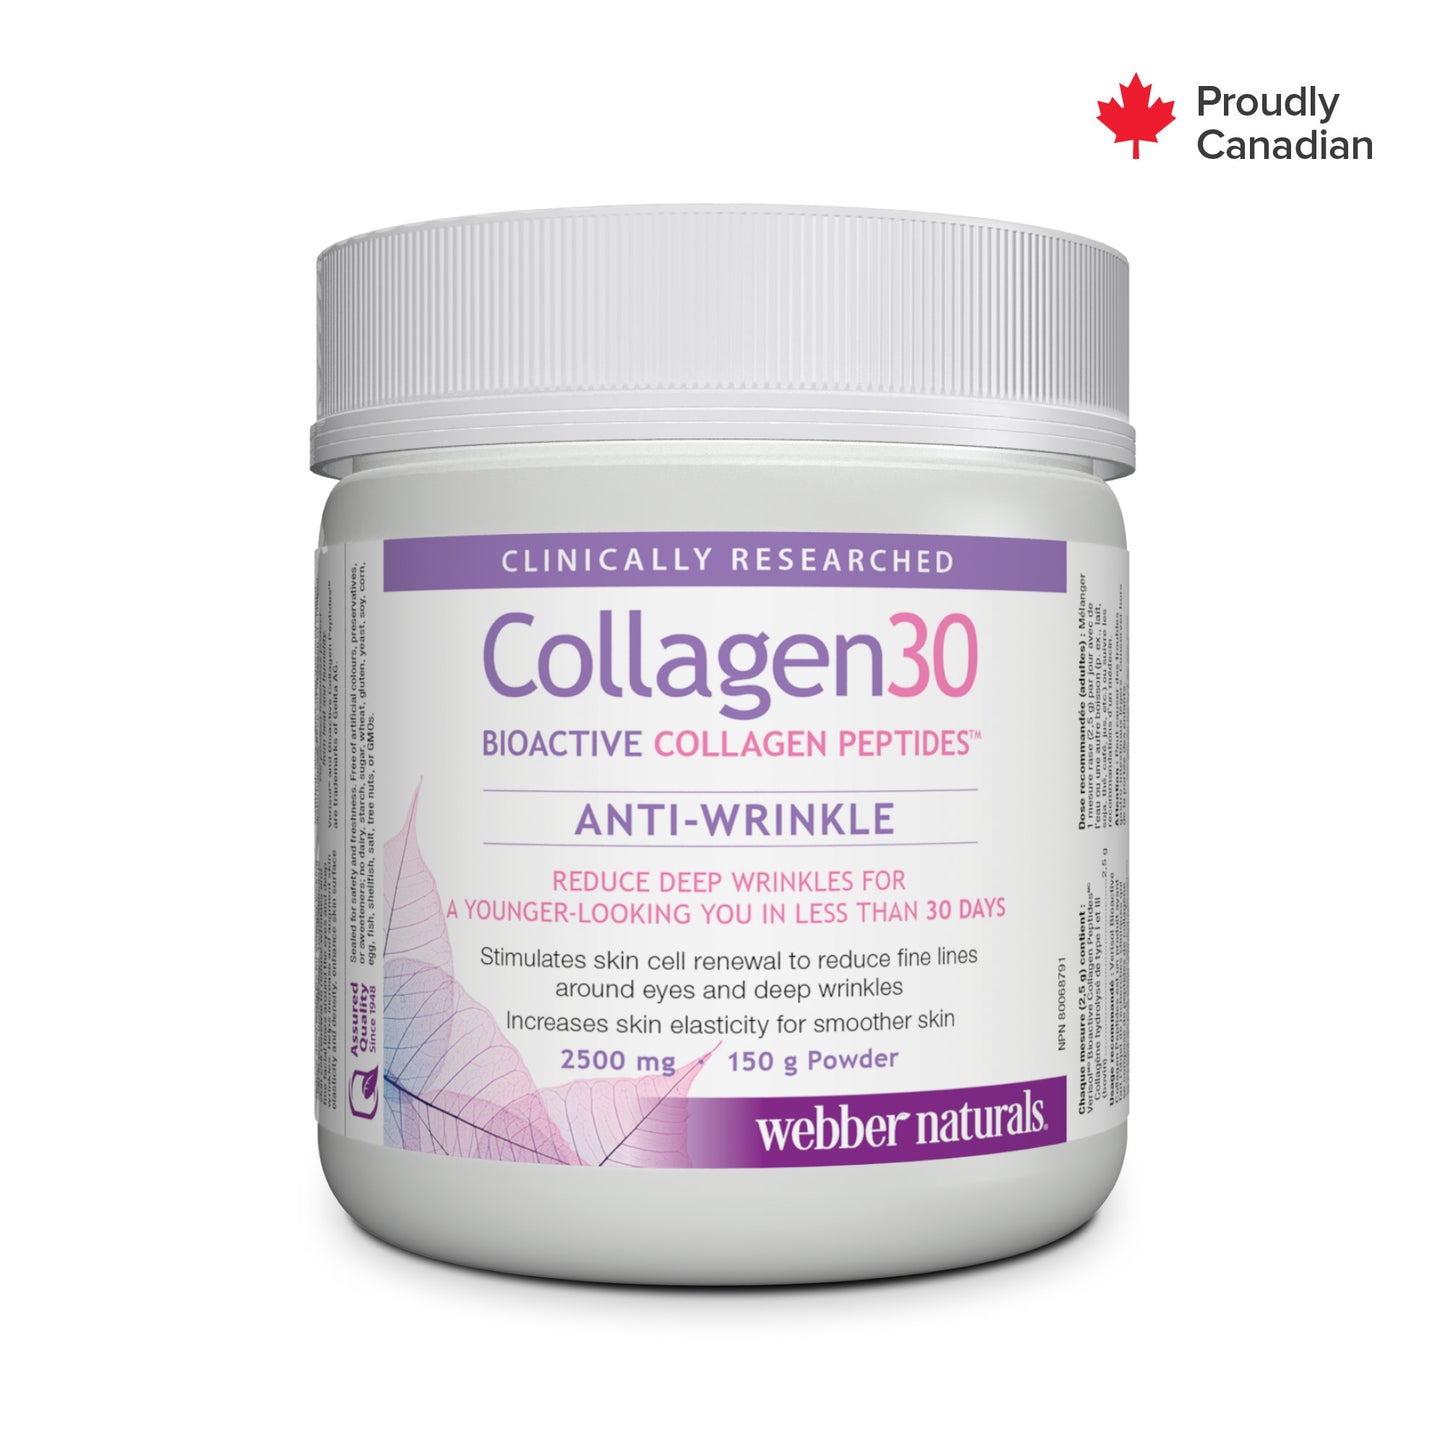 Collagen30® Bioactive Collagen Peptides 2500 mg for Webber Naturals|v|hi-res|WN3665